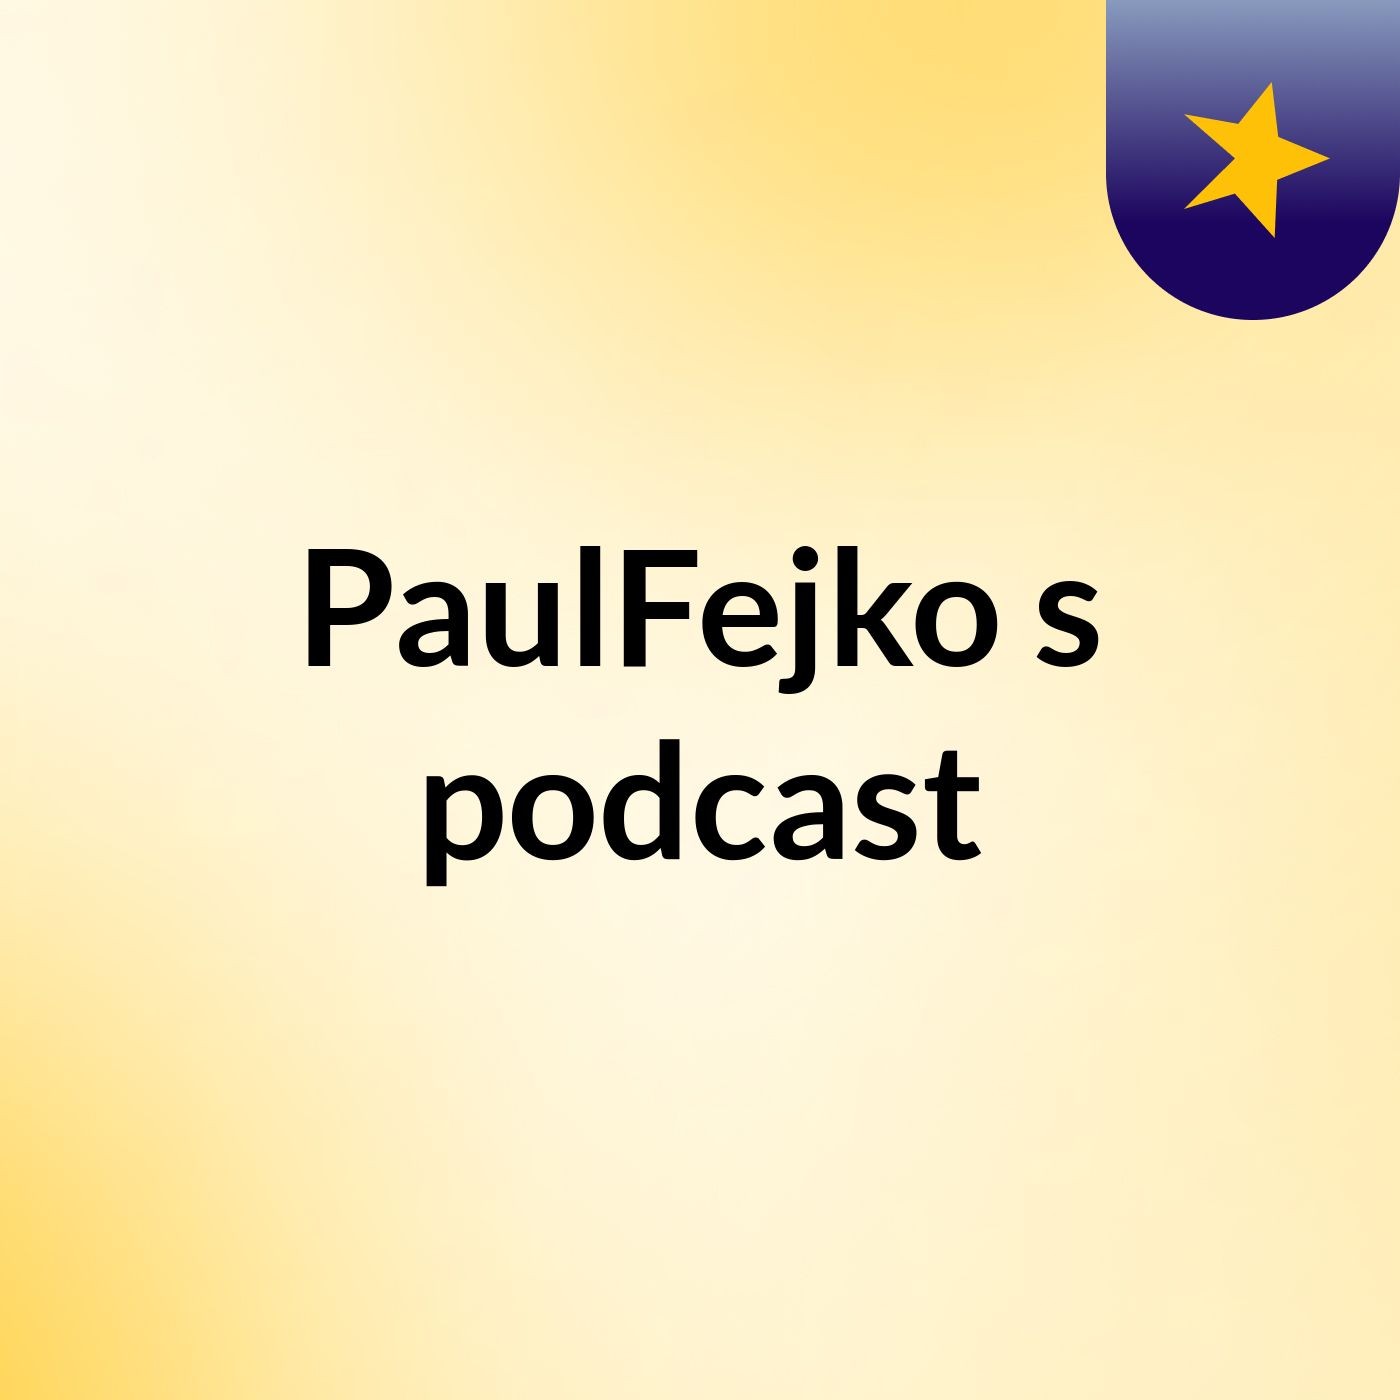 PaulFejko's podcast